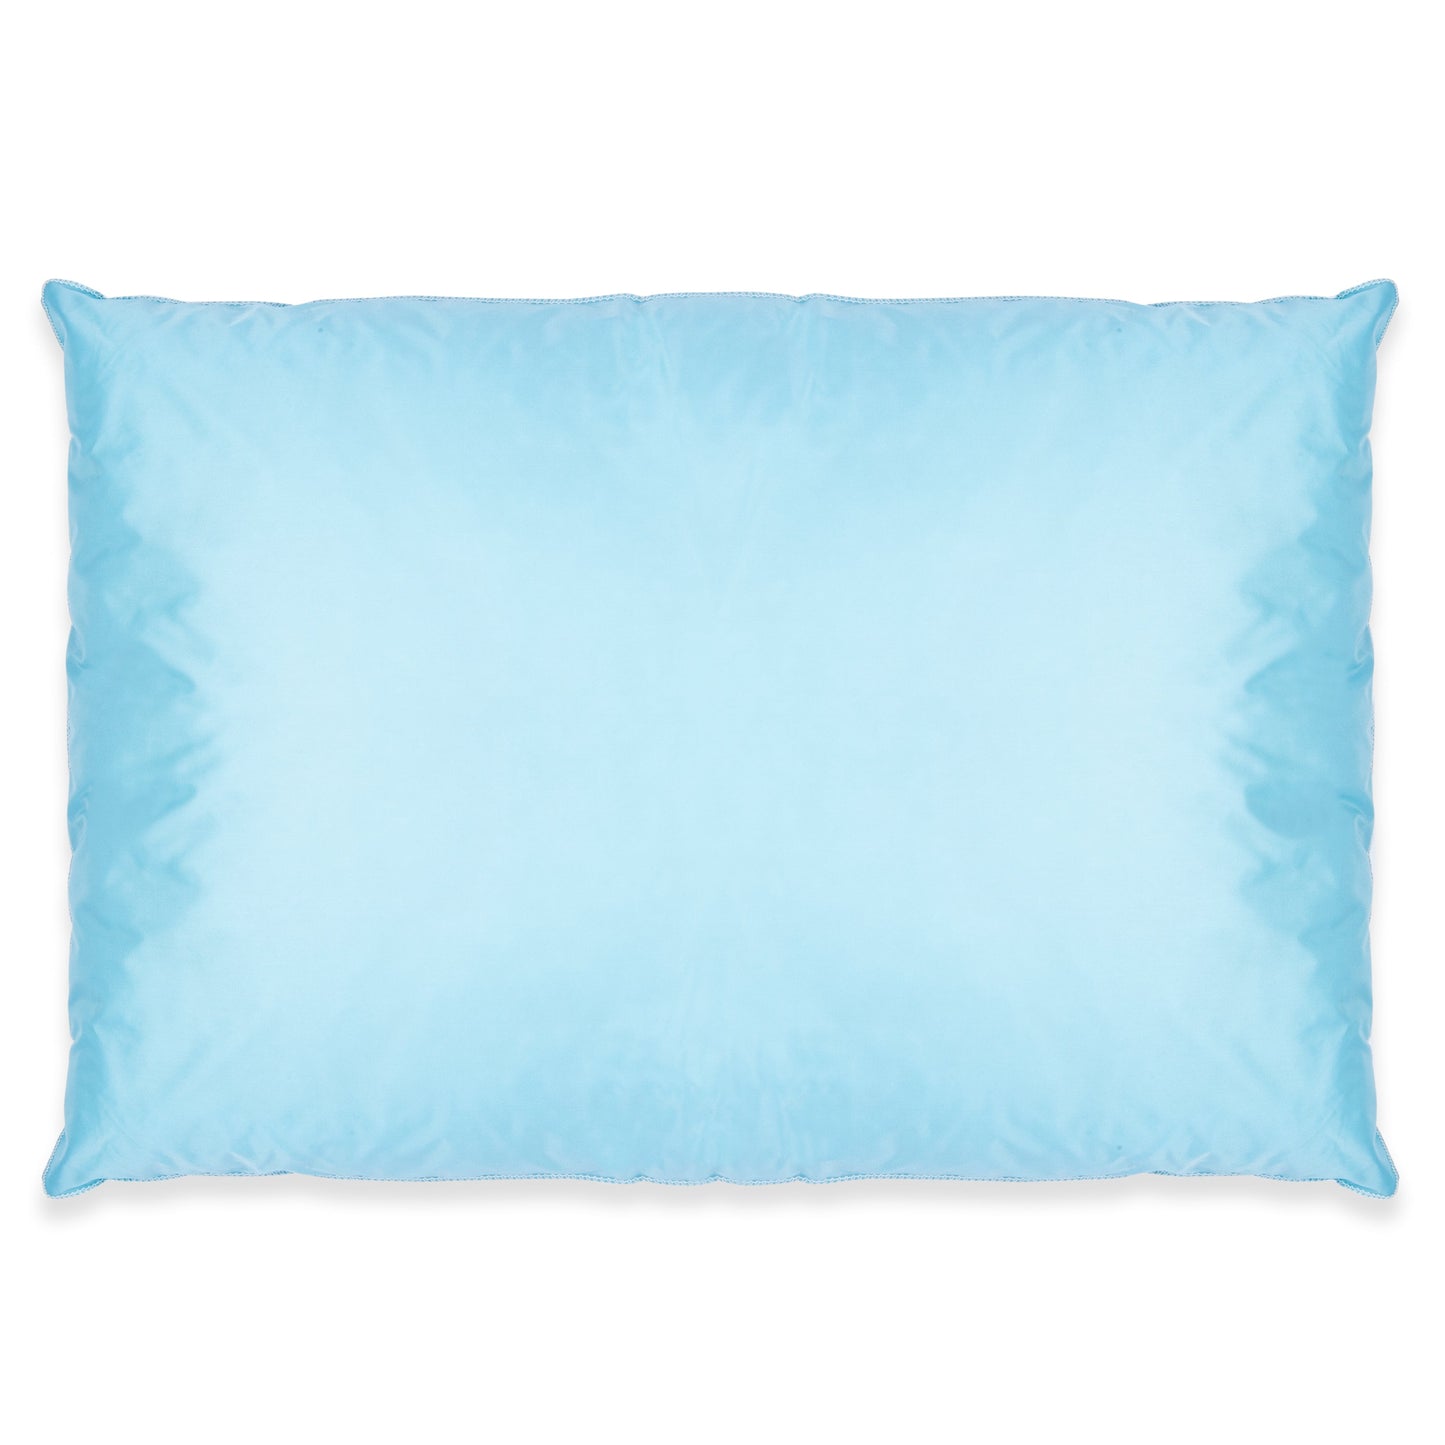 American Dawn | 21X27 Inch Blue Pillow